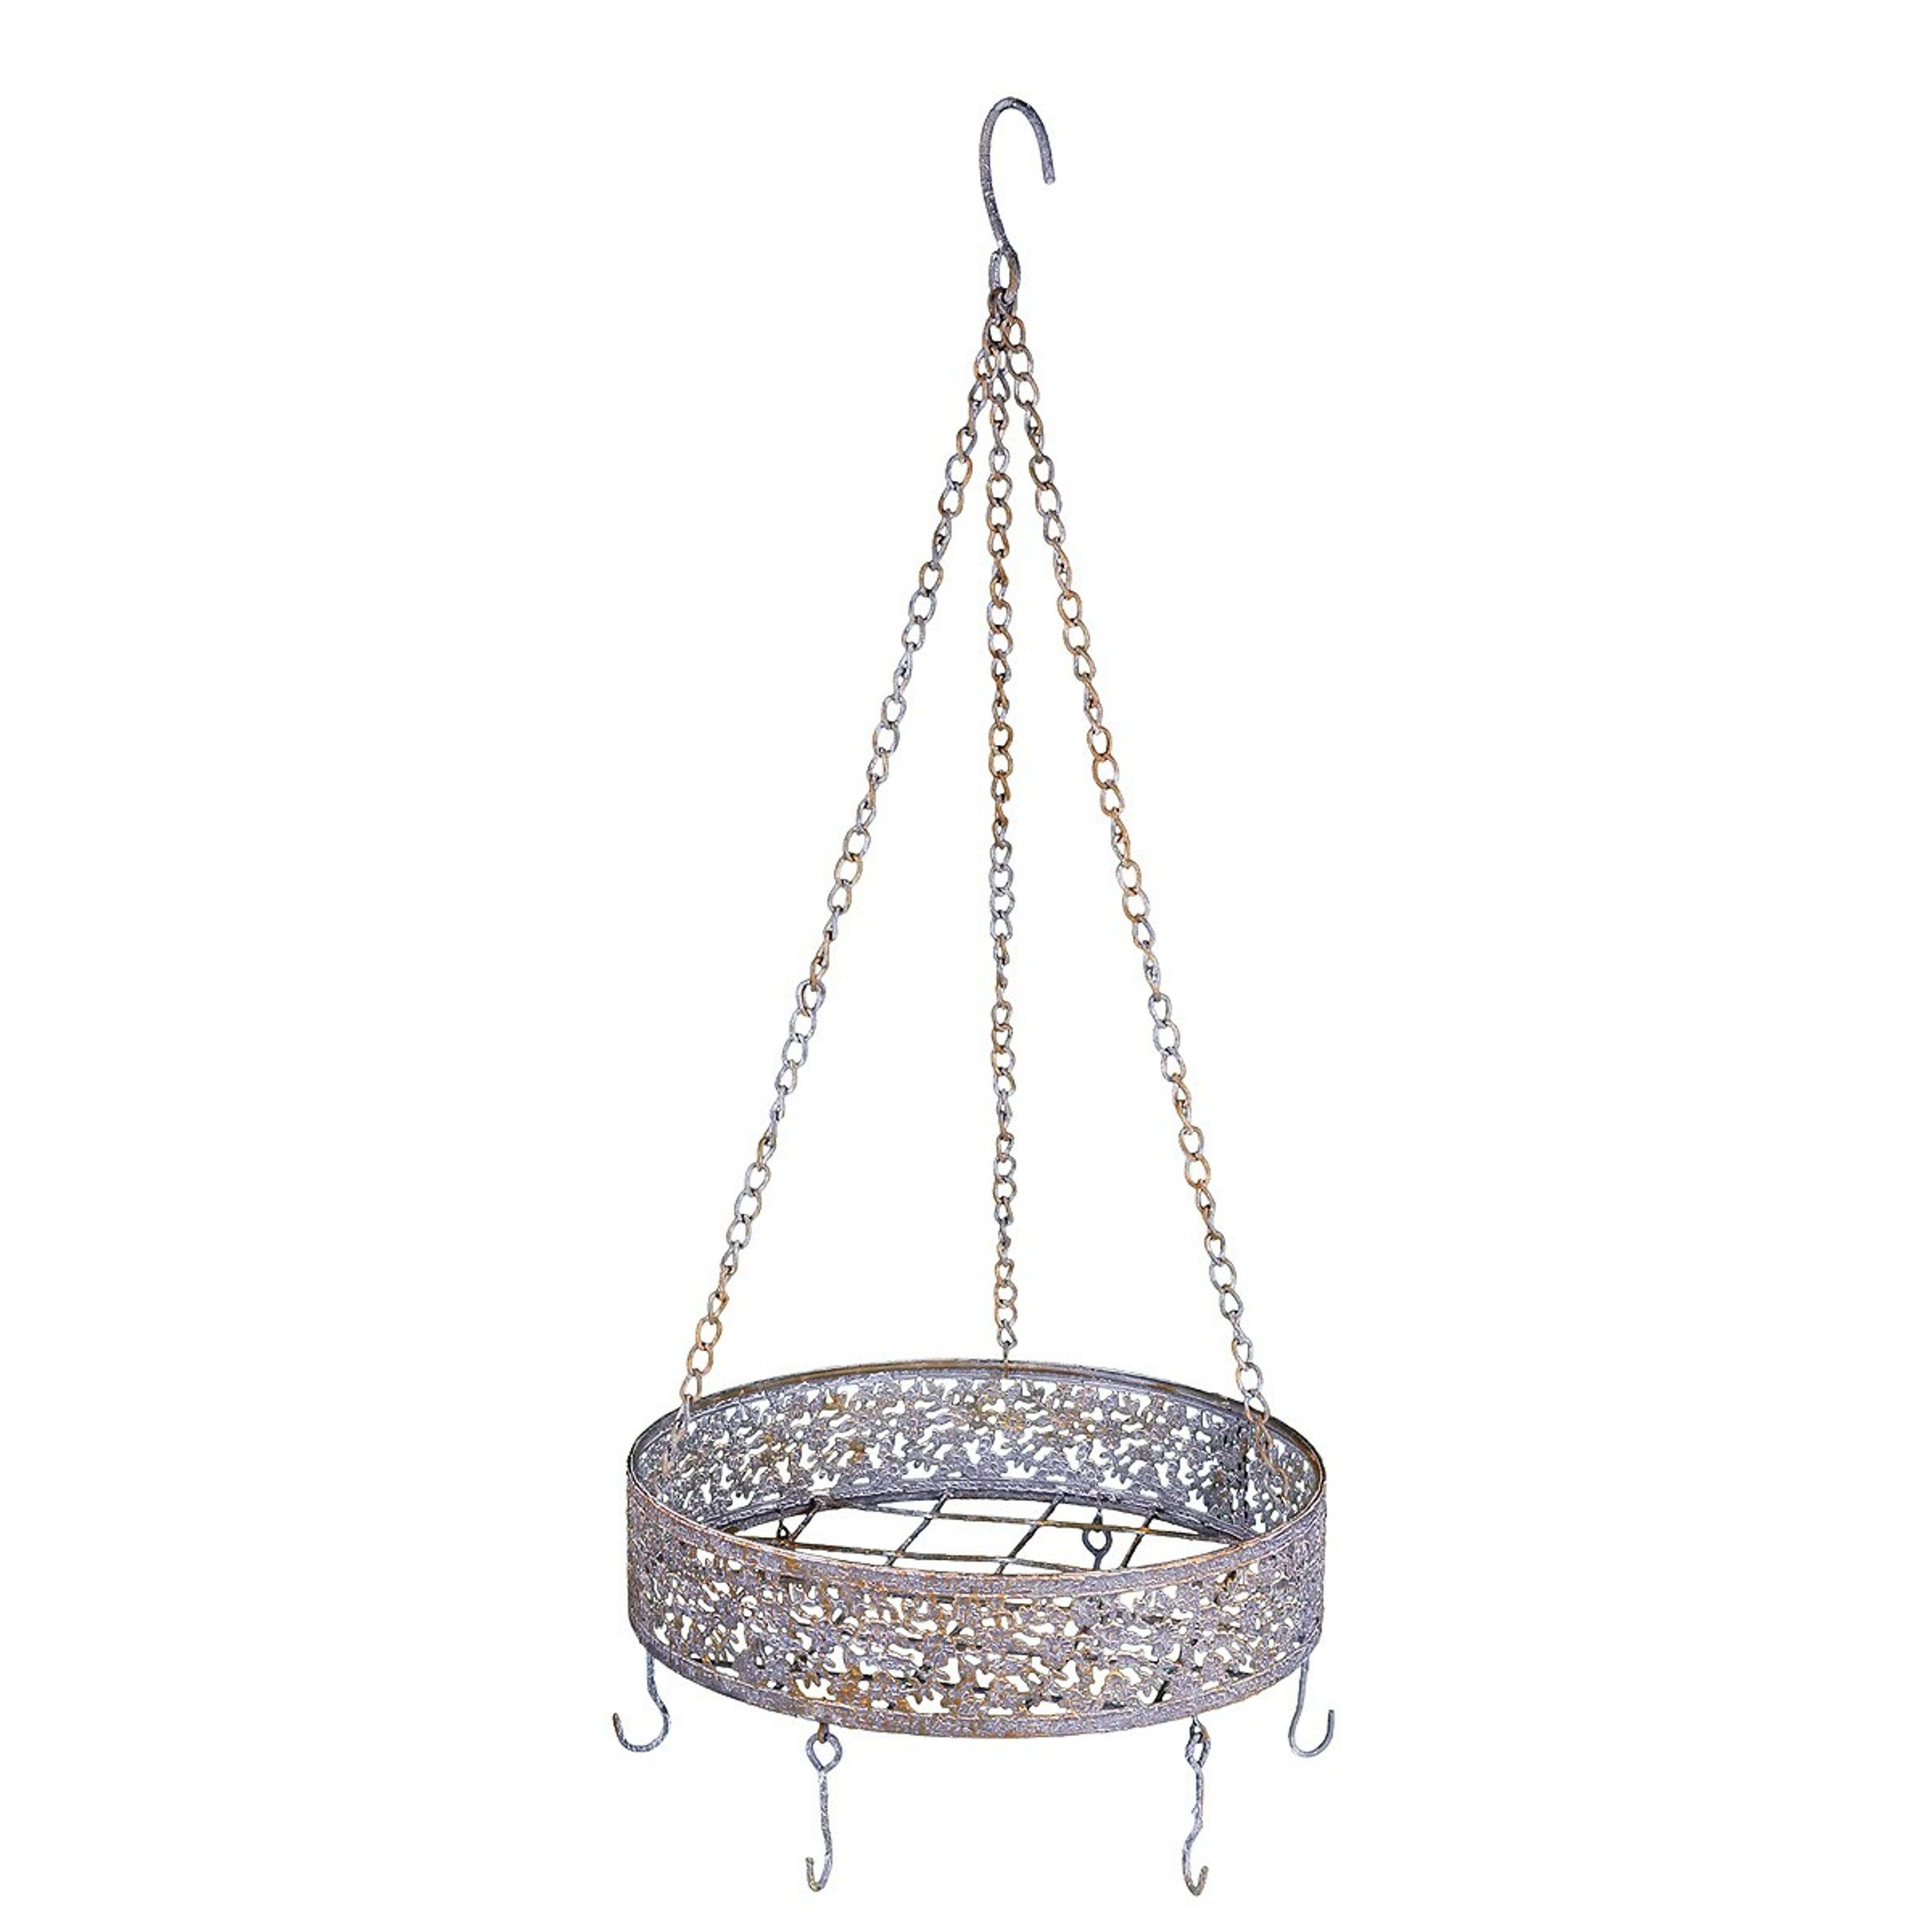 Buy wholesale Decorative hanger metal - round in grey/rust